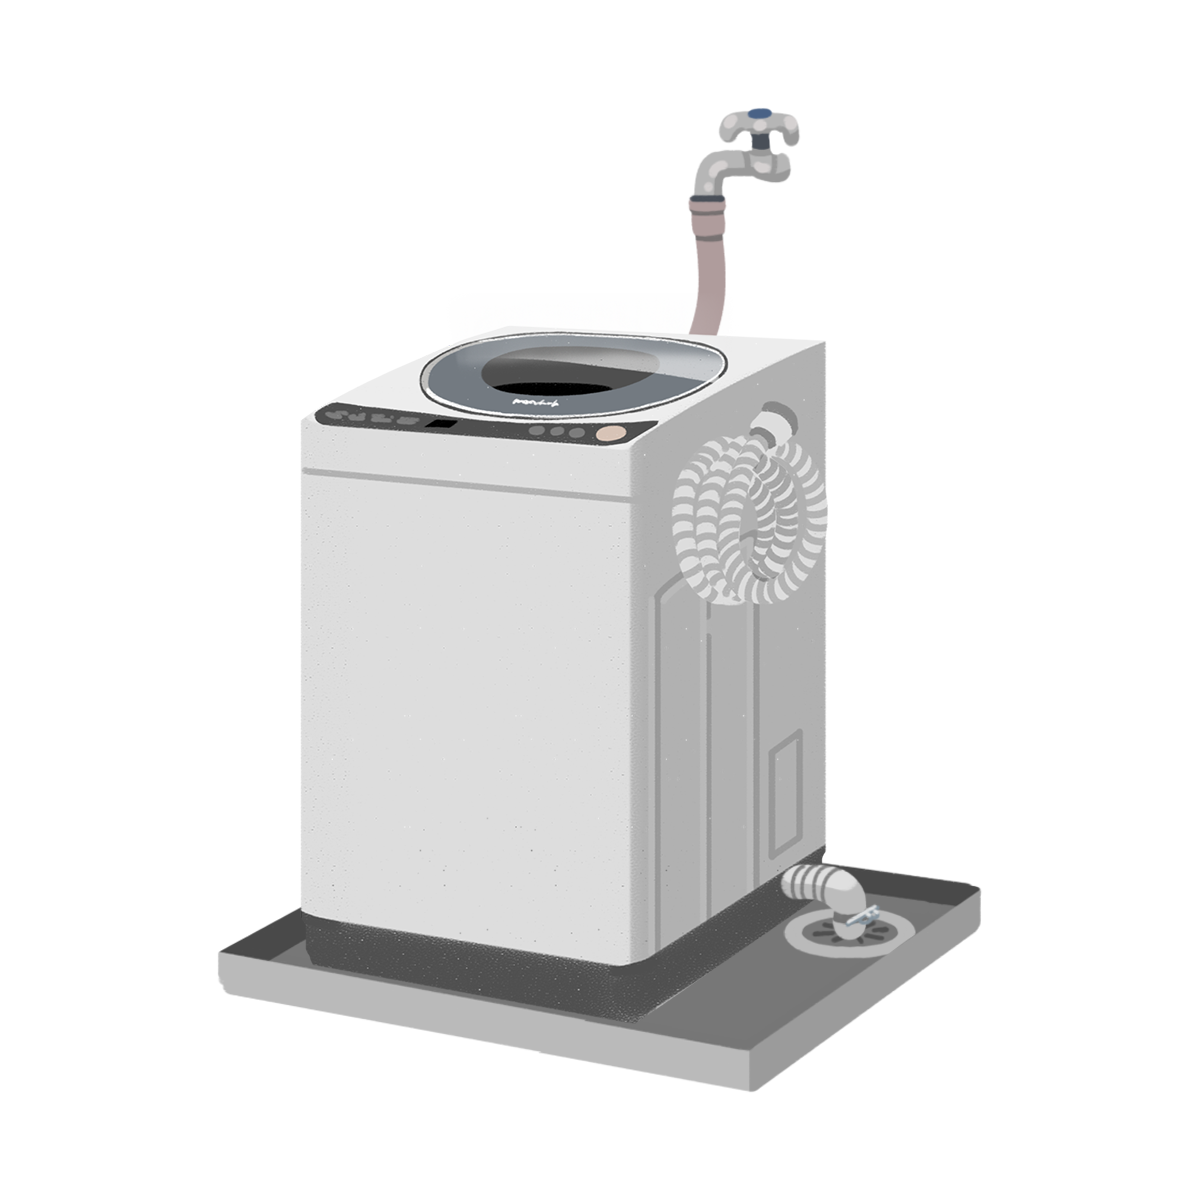 洗濯機の配線のイラスト エコのモト